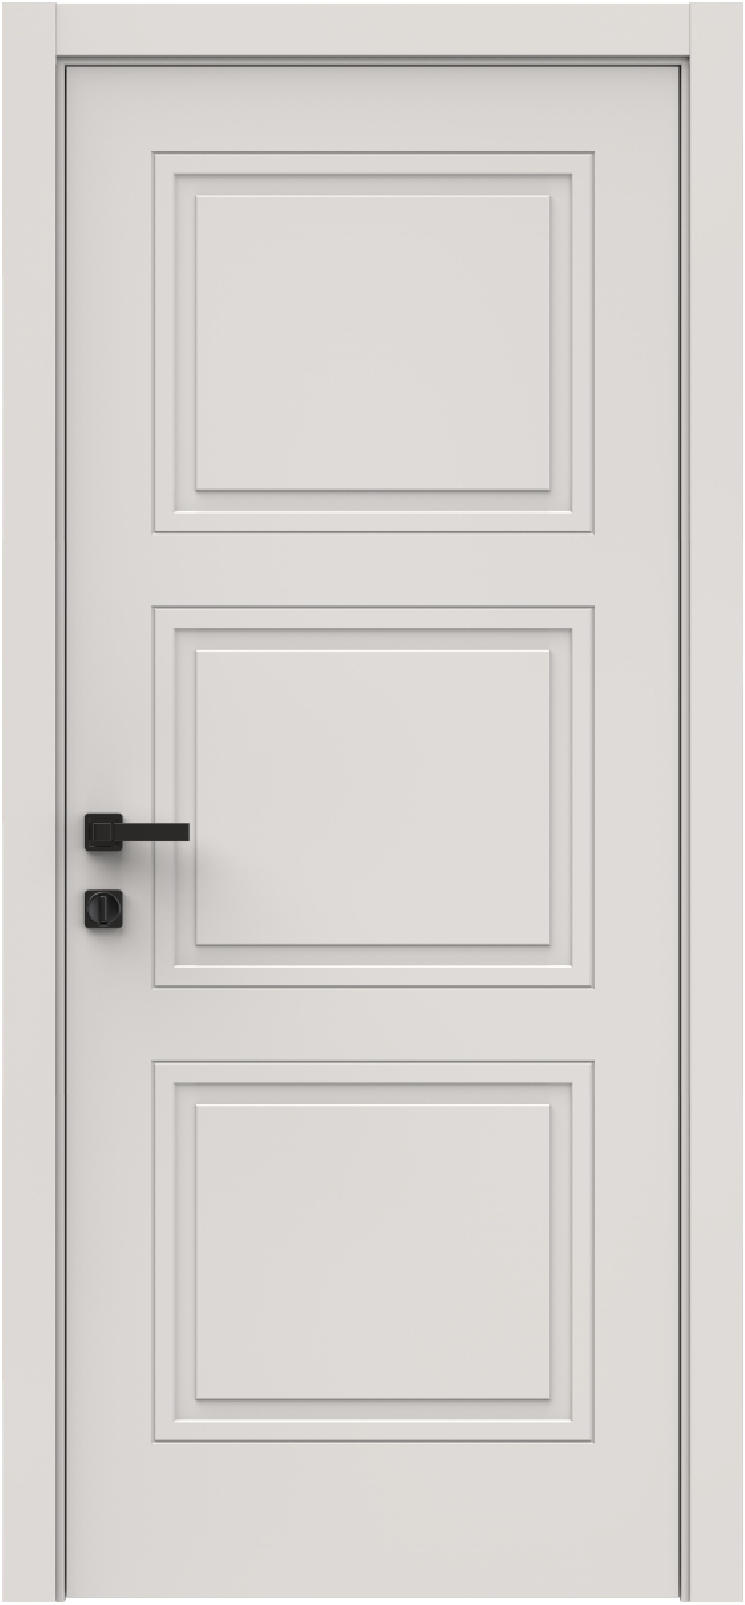 Questdoors Межкомнатная дверь QID4, арт. 26324 - фото №1